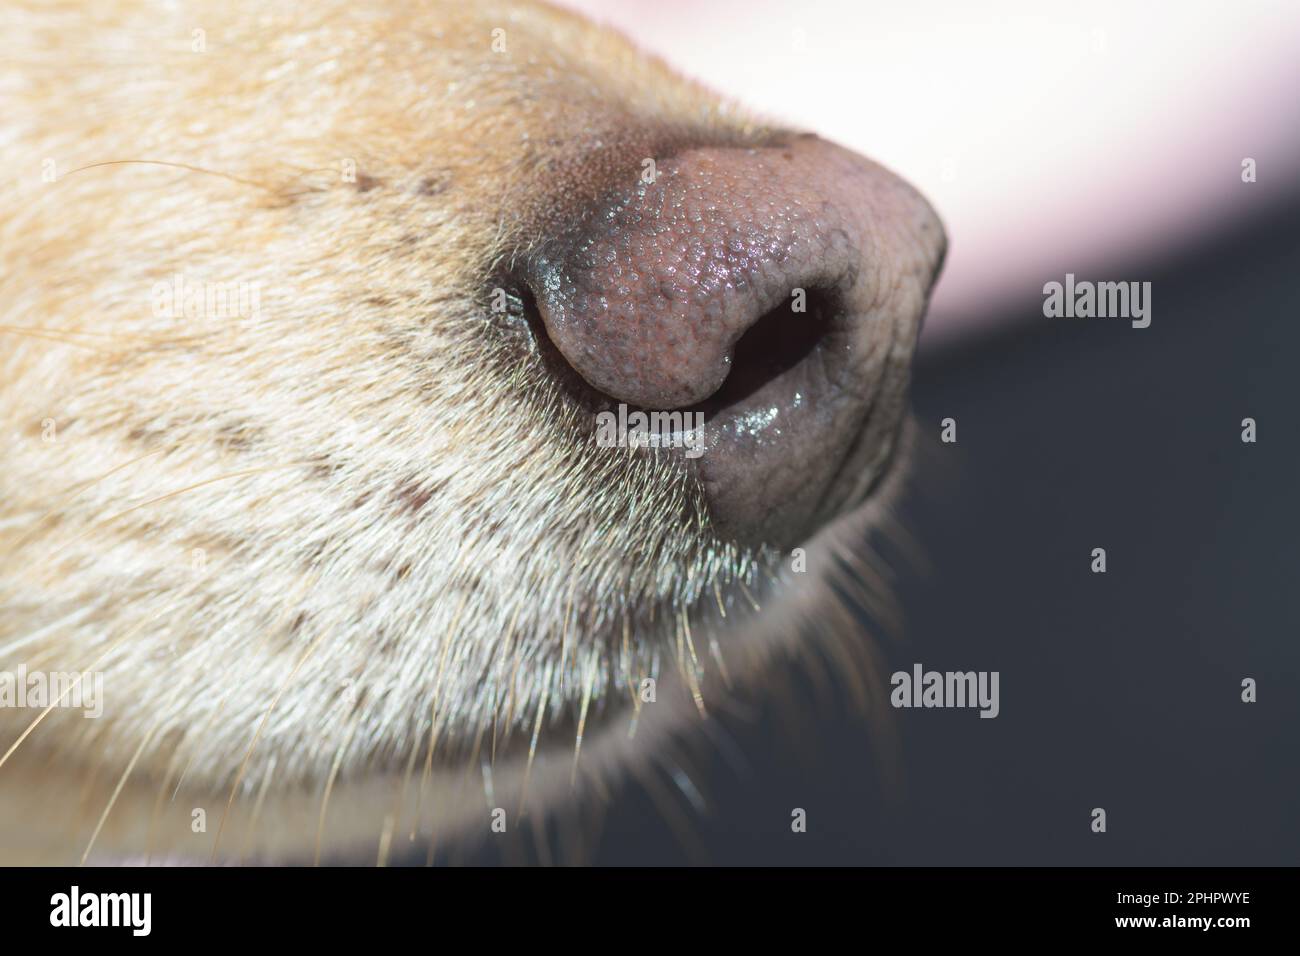 Gros plan sur le nez et le museau du chien brun clair. Dressage de chiens, chien de détection ou chien sniffer, sens et concepts d'odeur. Banque D'Images